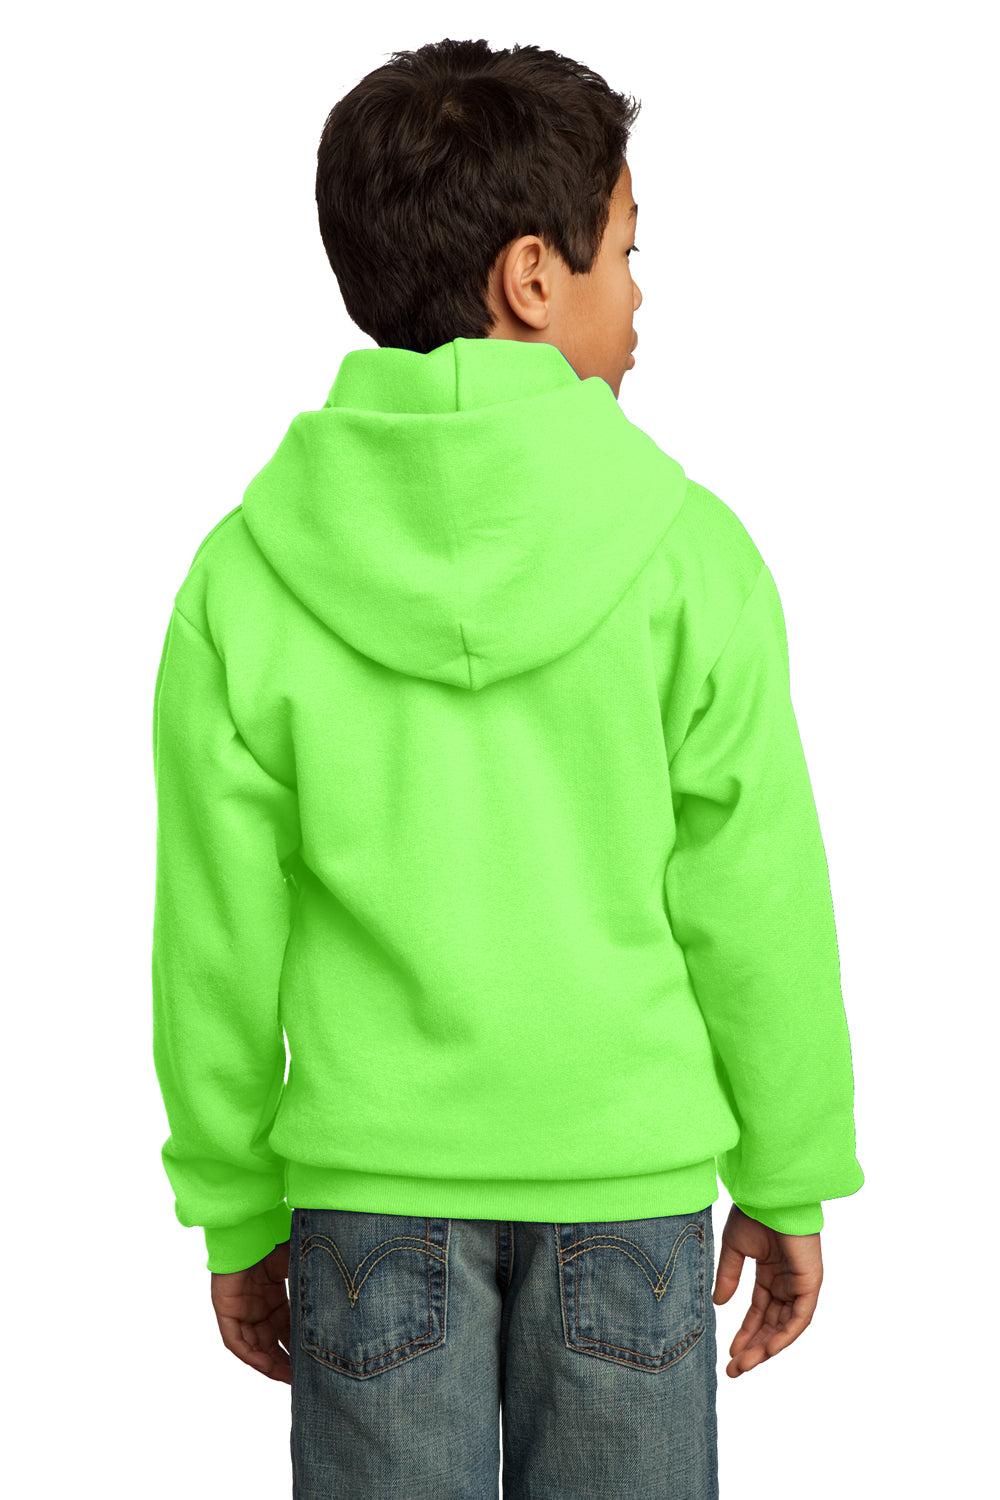 Port & Company PC90YH Youth Core Fleece Hooded Sweatshirt Hoodie Neon Green Back